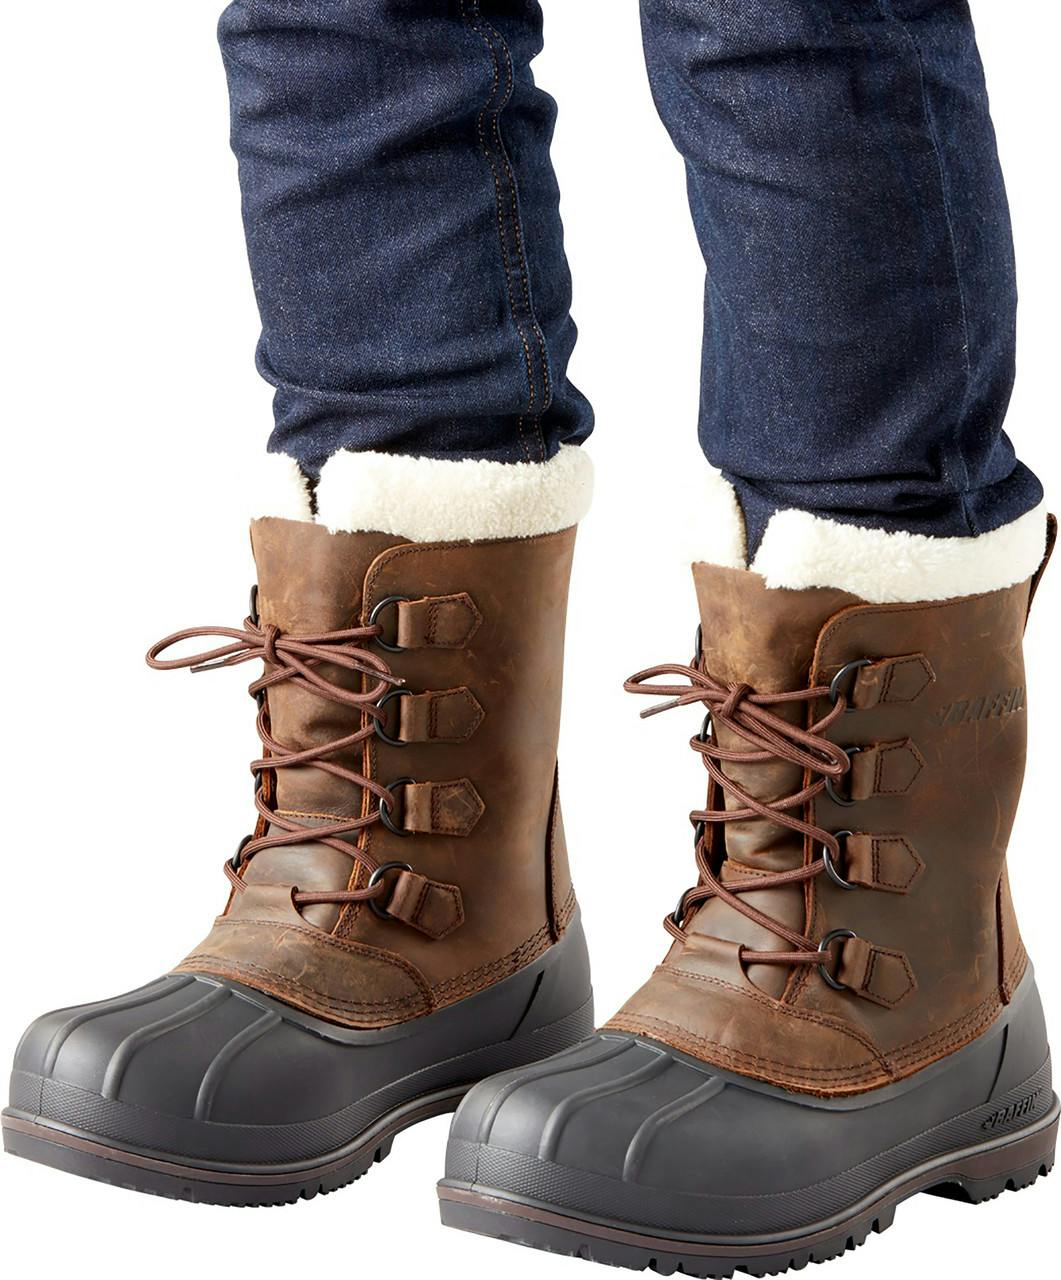 Canada Waterproof Winter Boots Brown